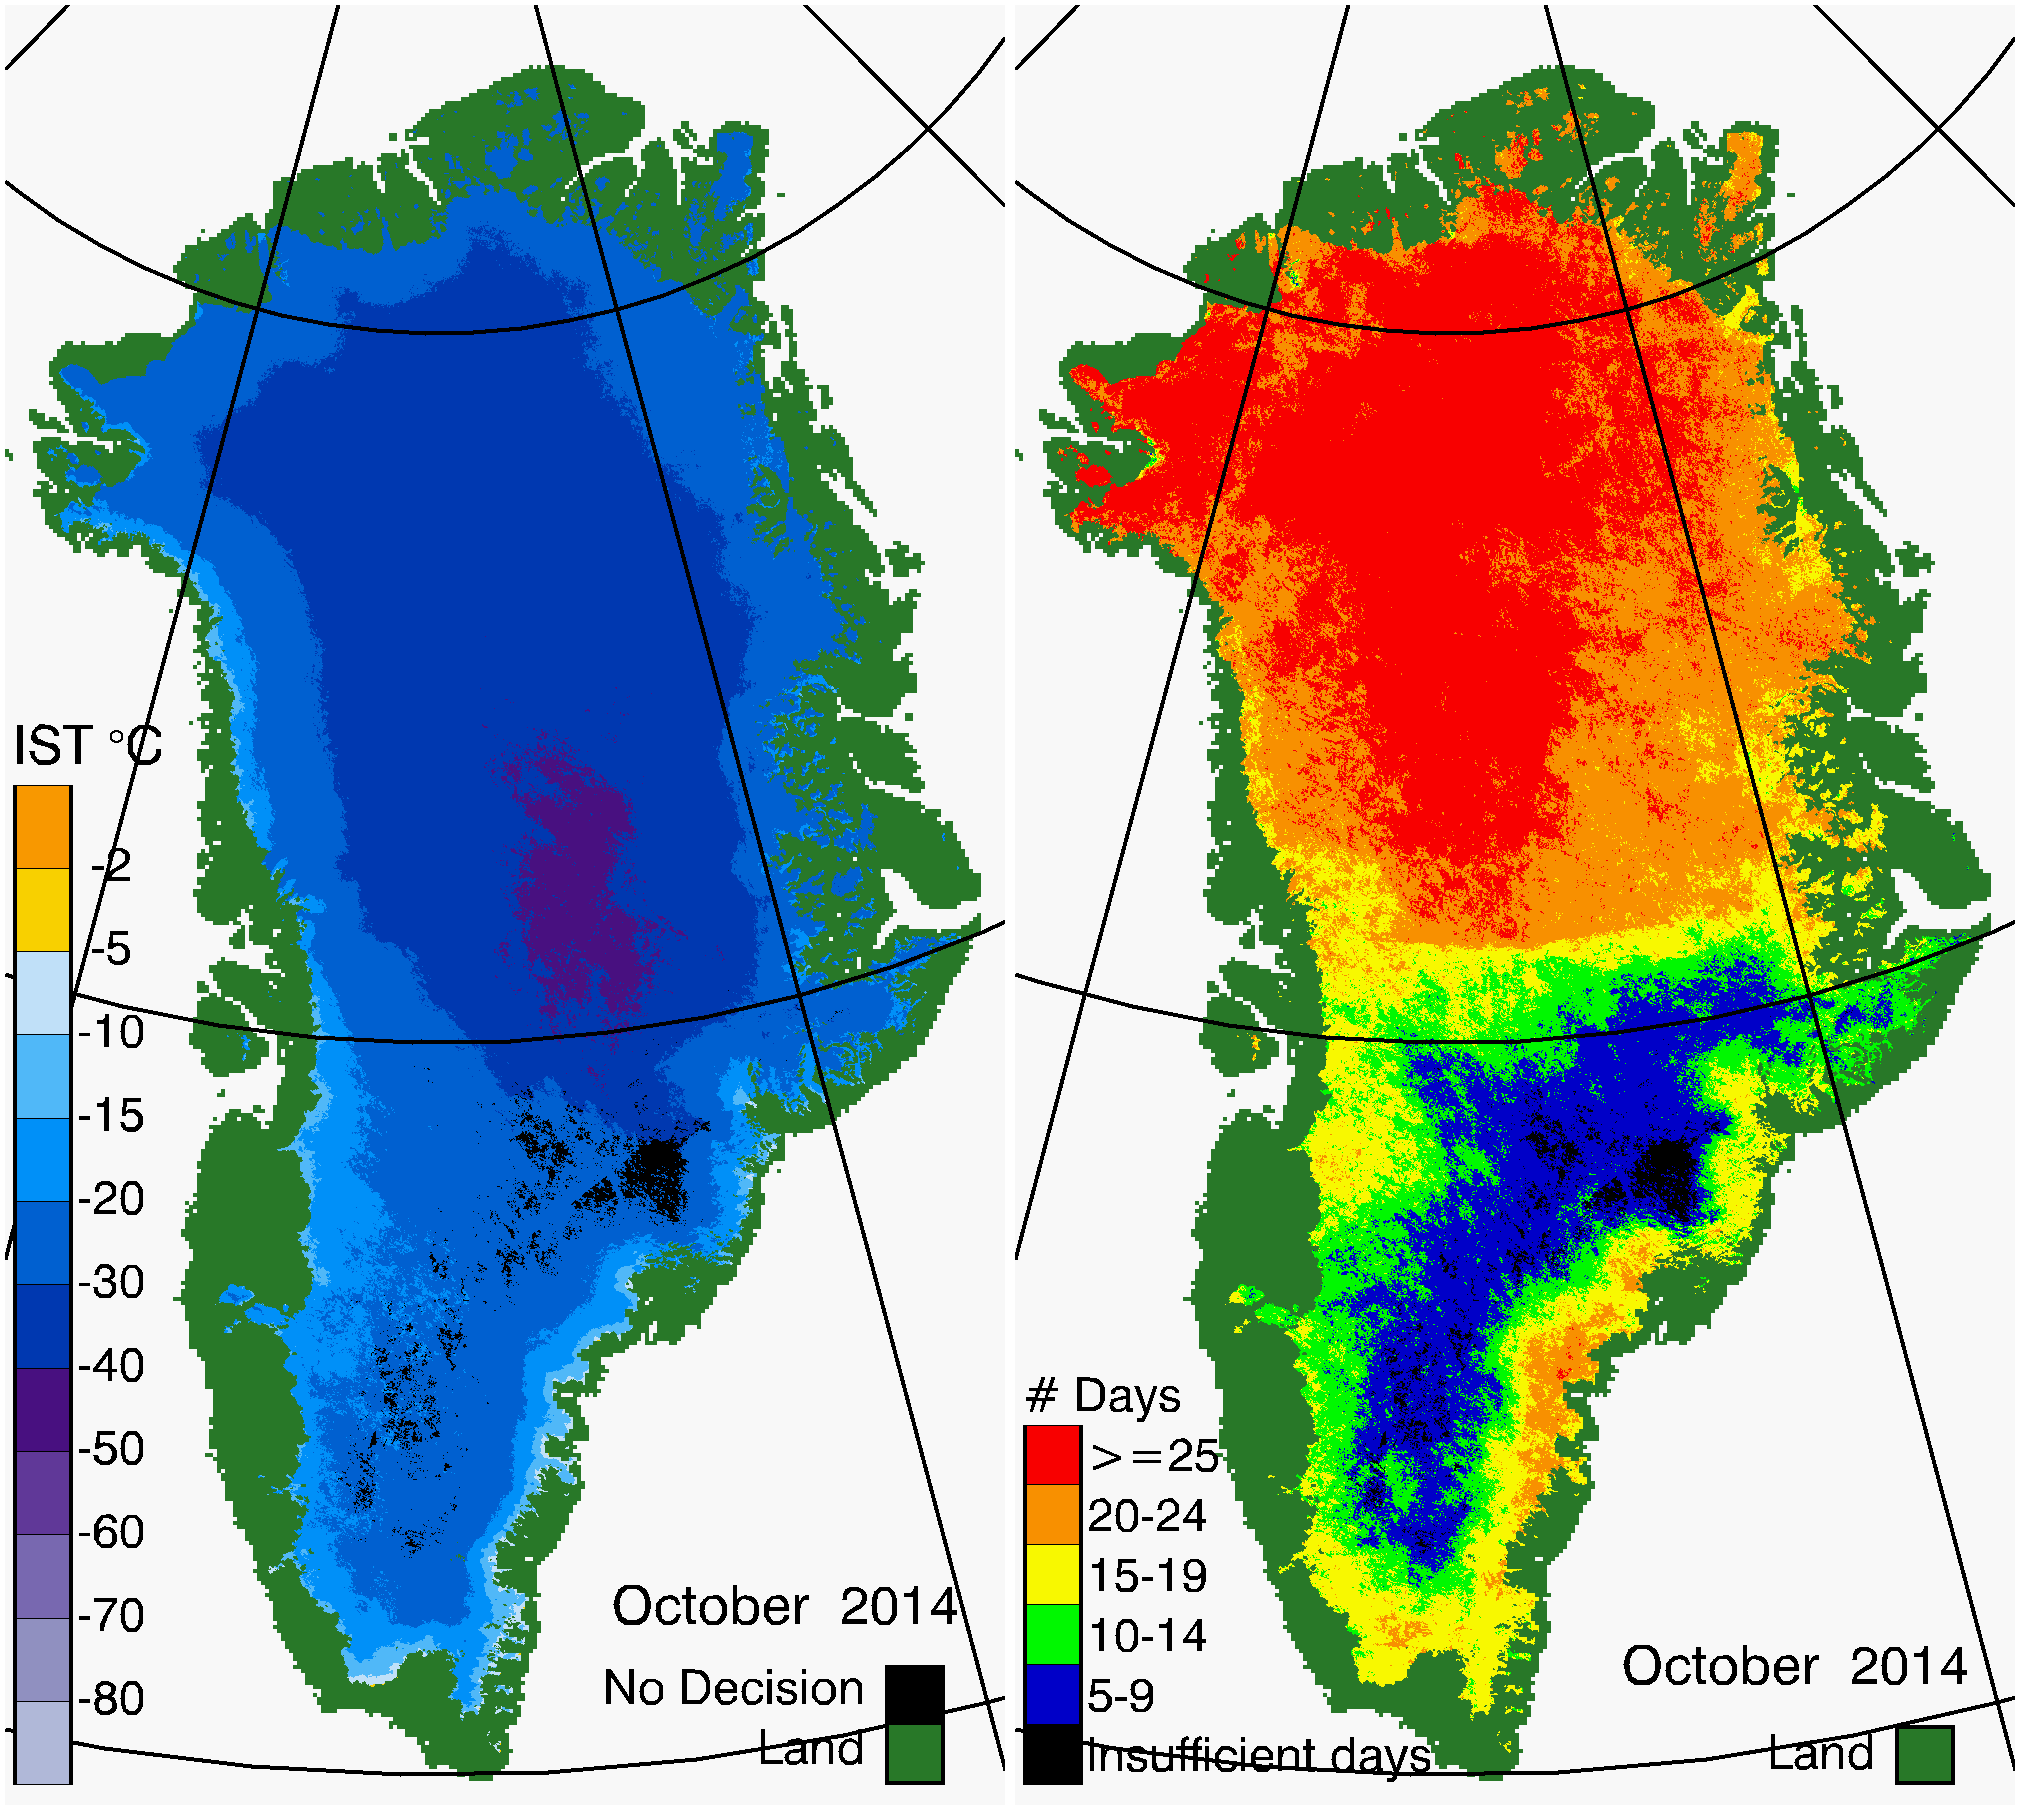 Greenland Surface Temp 10/2014